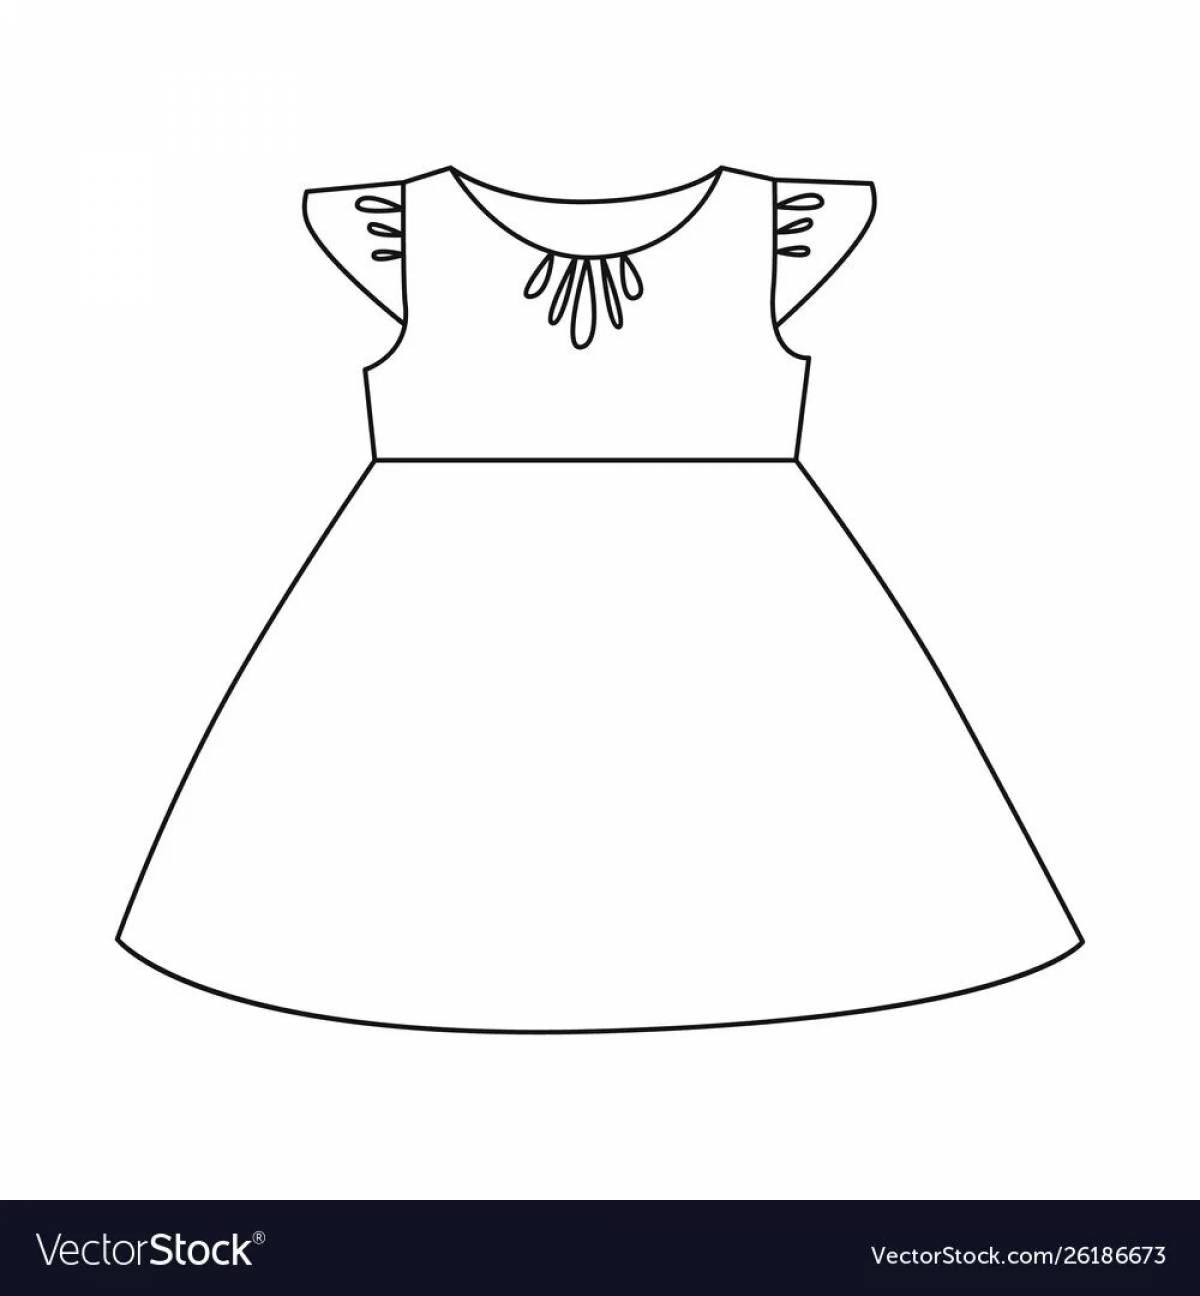 Раскраска маскарадное платье для детей 2-3 лет